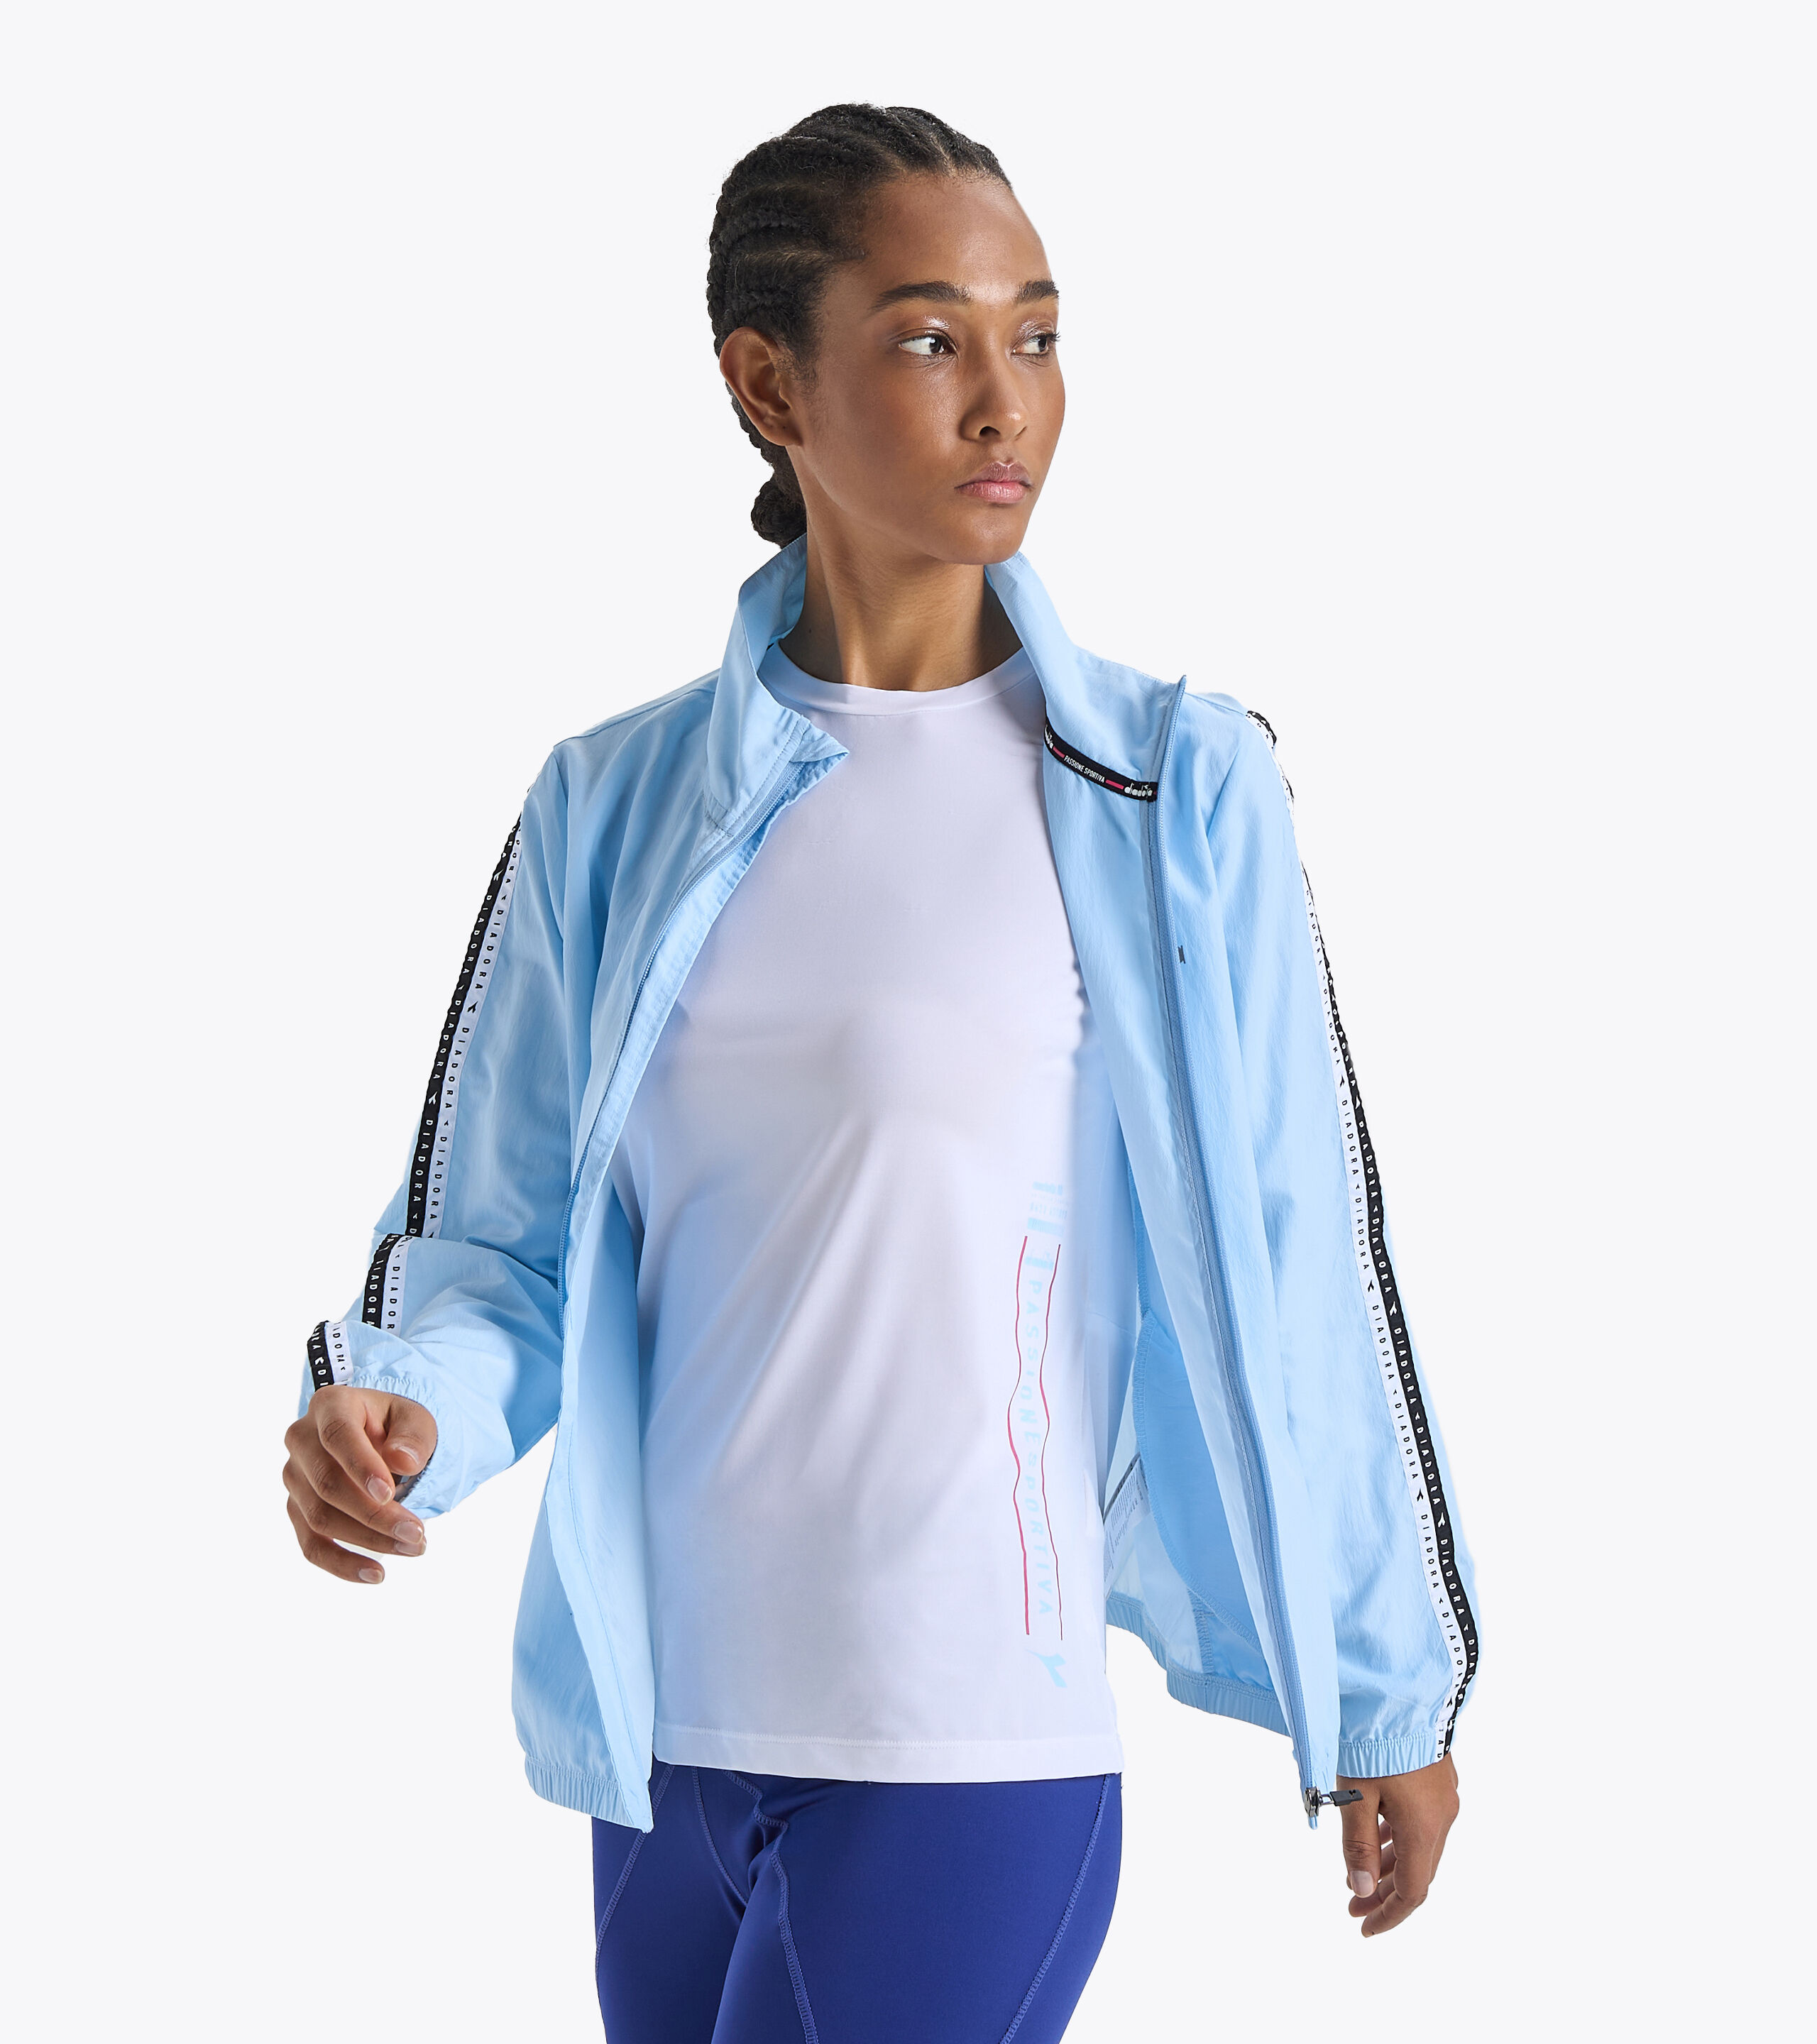 Women's Hooded Running Jacket - Windproof Reflective High Vis & Lightweight  - Free Returns 5* Reviews